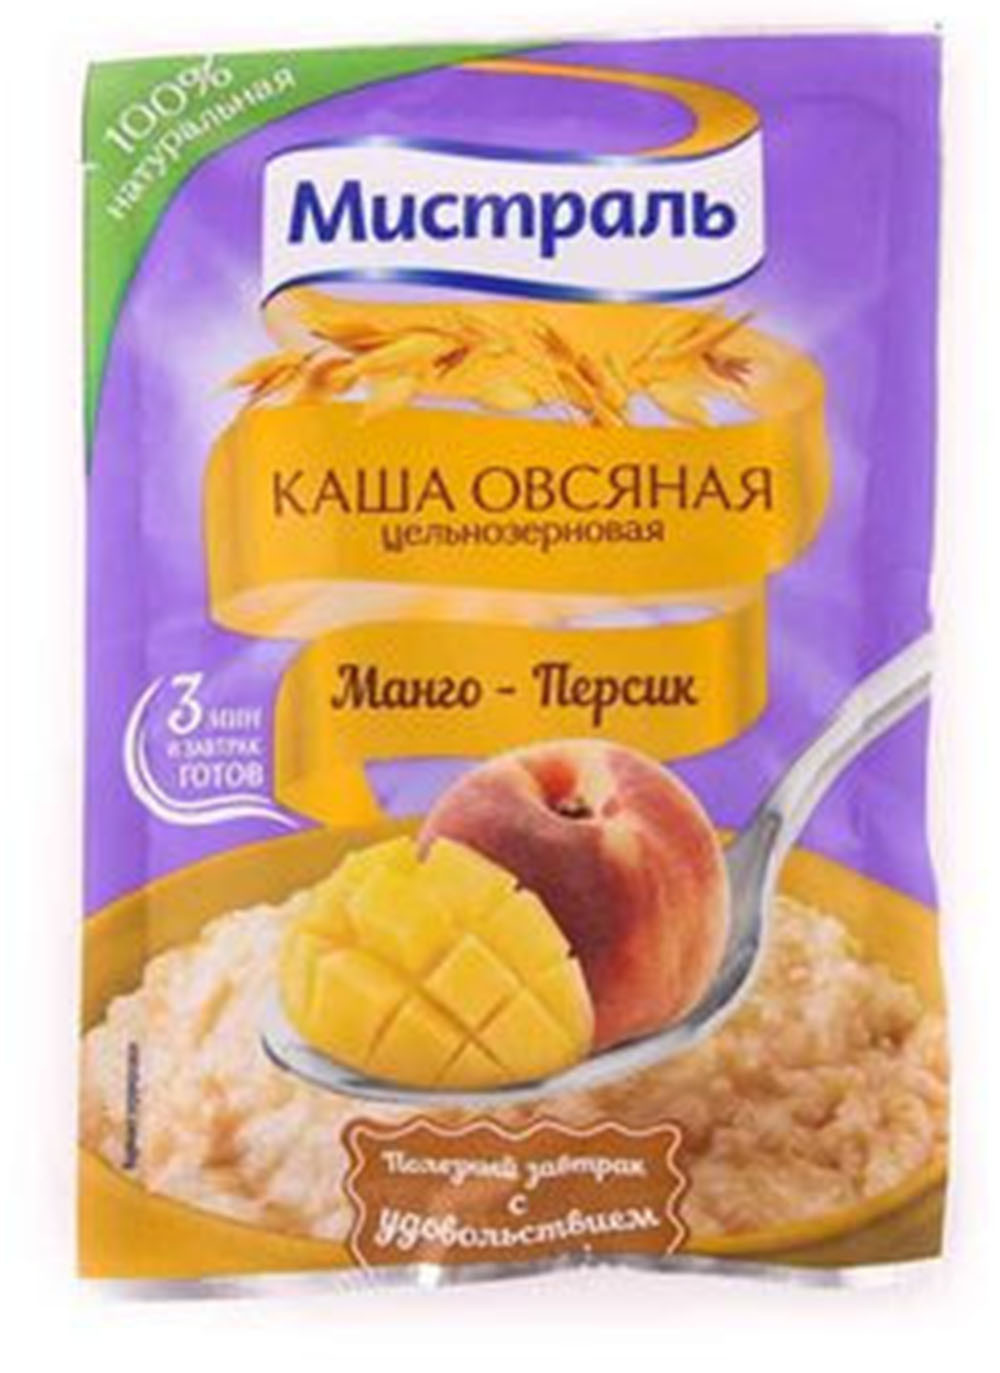 Каша Овсяная Мистраль манго персик 40г - интернет-магазин Близнецы